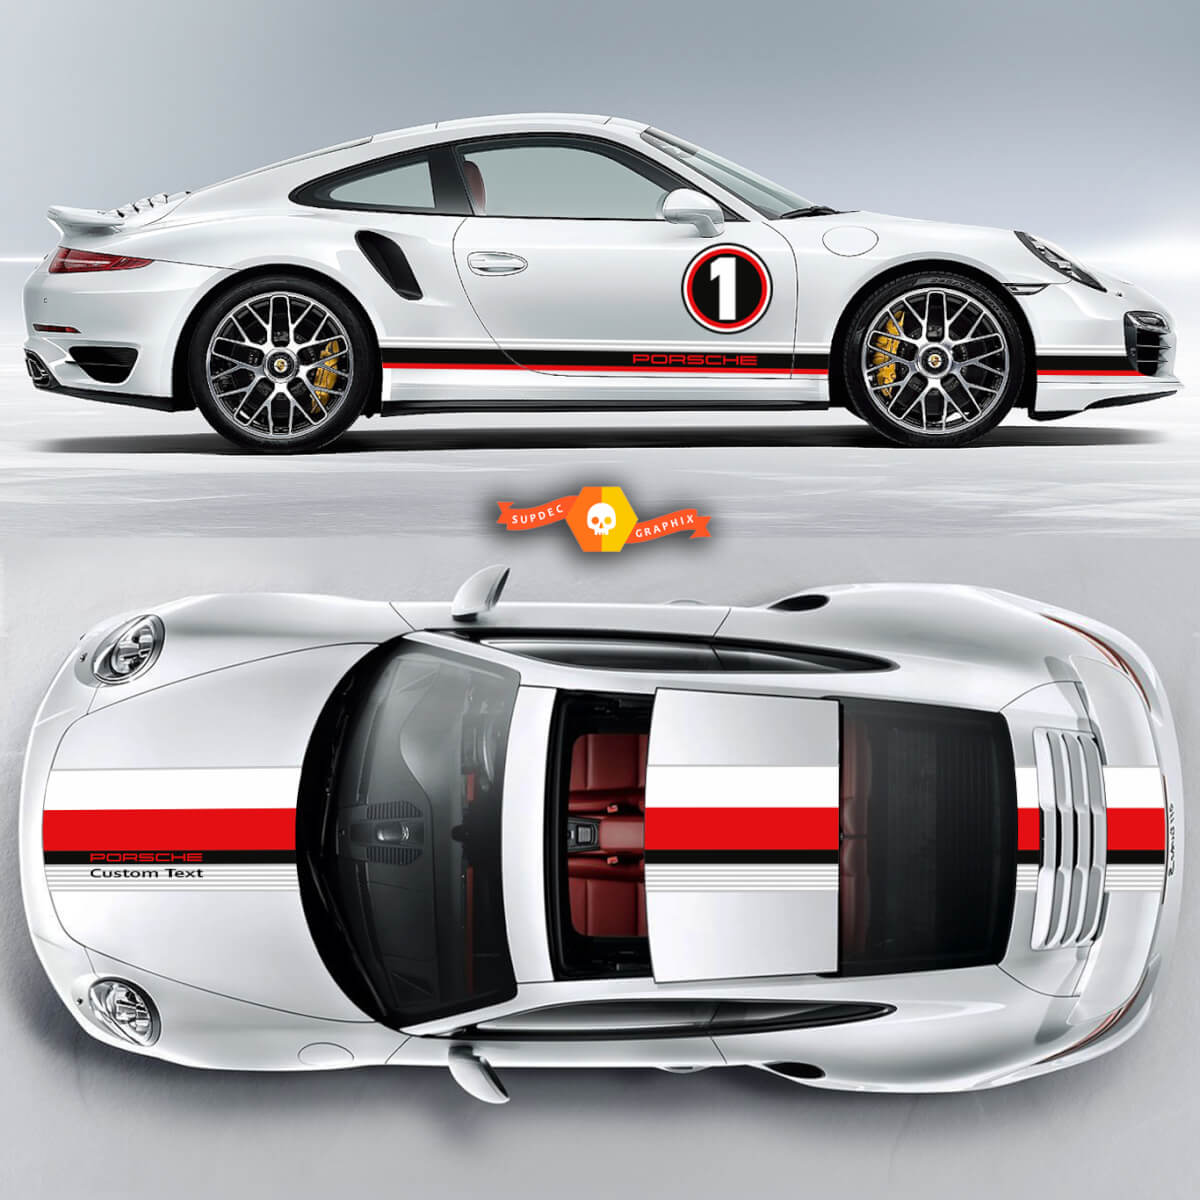 Erstaunliche Doppelstreifen über dem Top Le Mans Racing Stripes Porsche für Carrera Cayman Boxster oder jeden Porsche